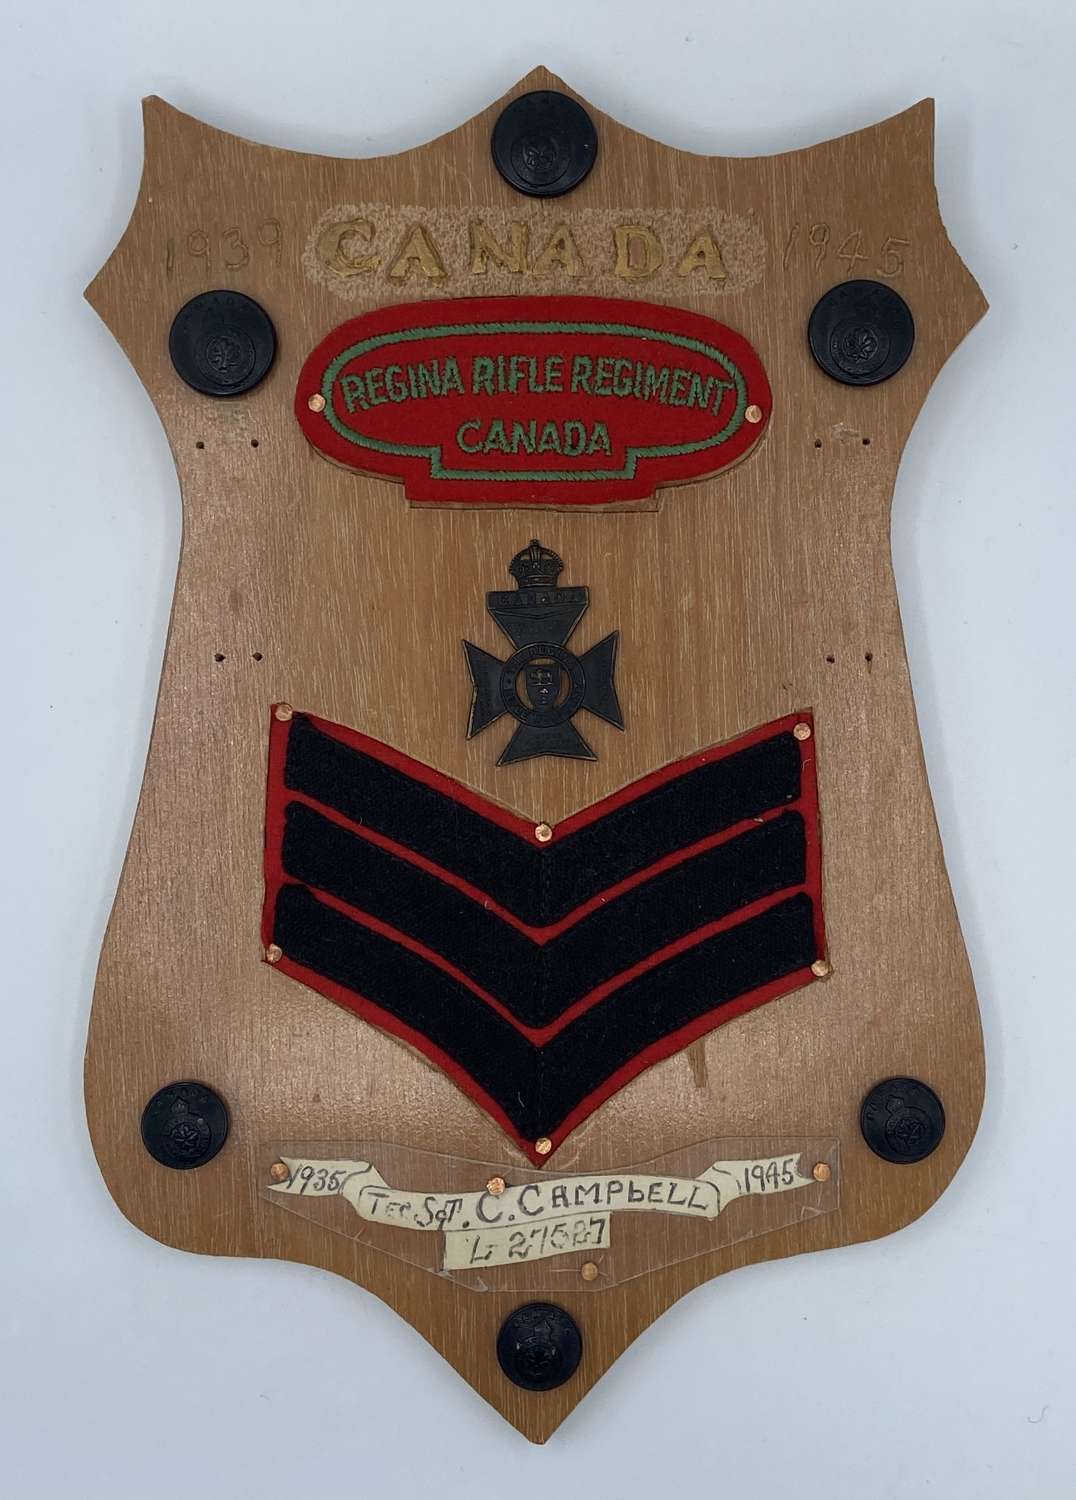 WW2 Era Commemorative Plaque Canadian Rifle Regiment Tec Sgt Campbell